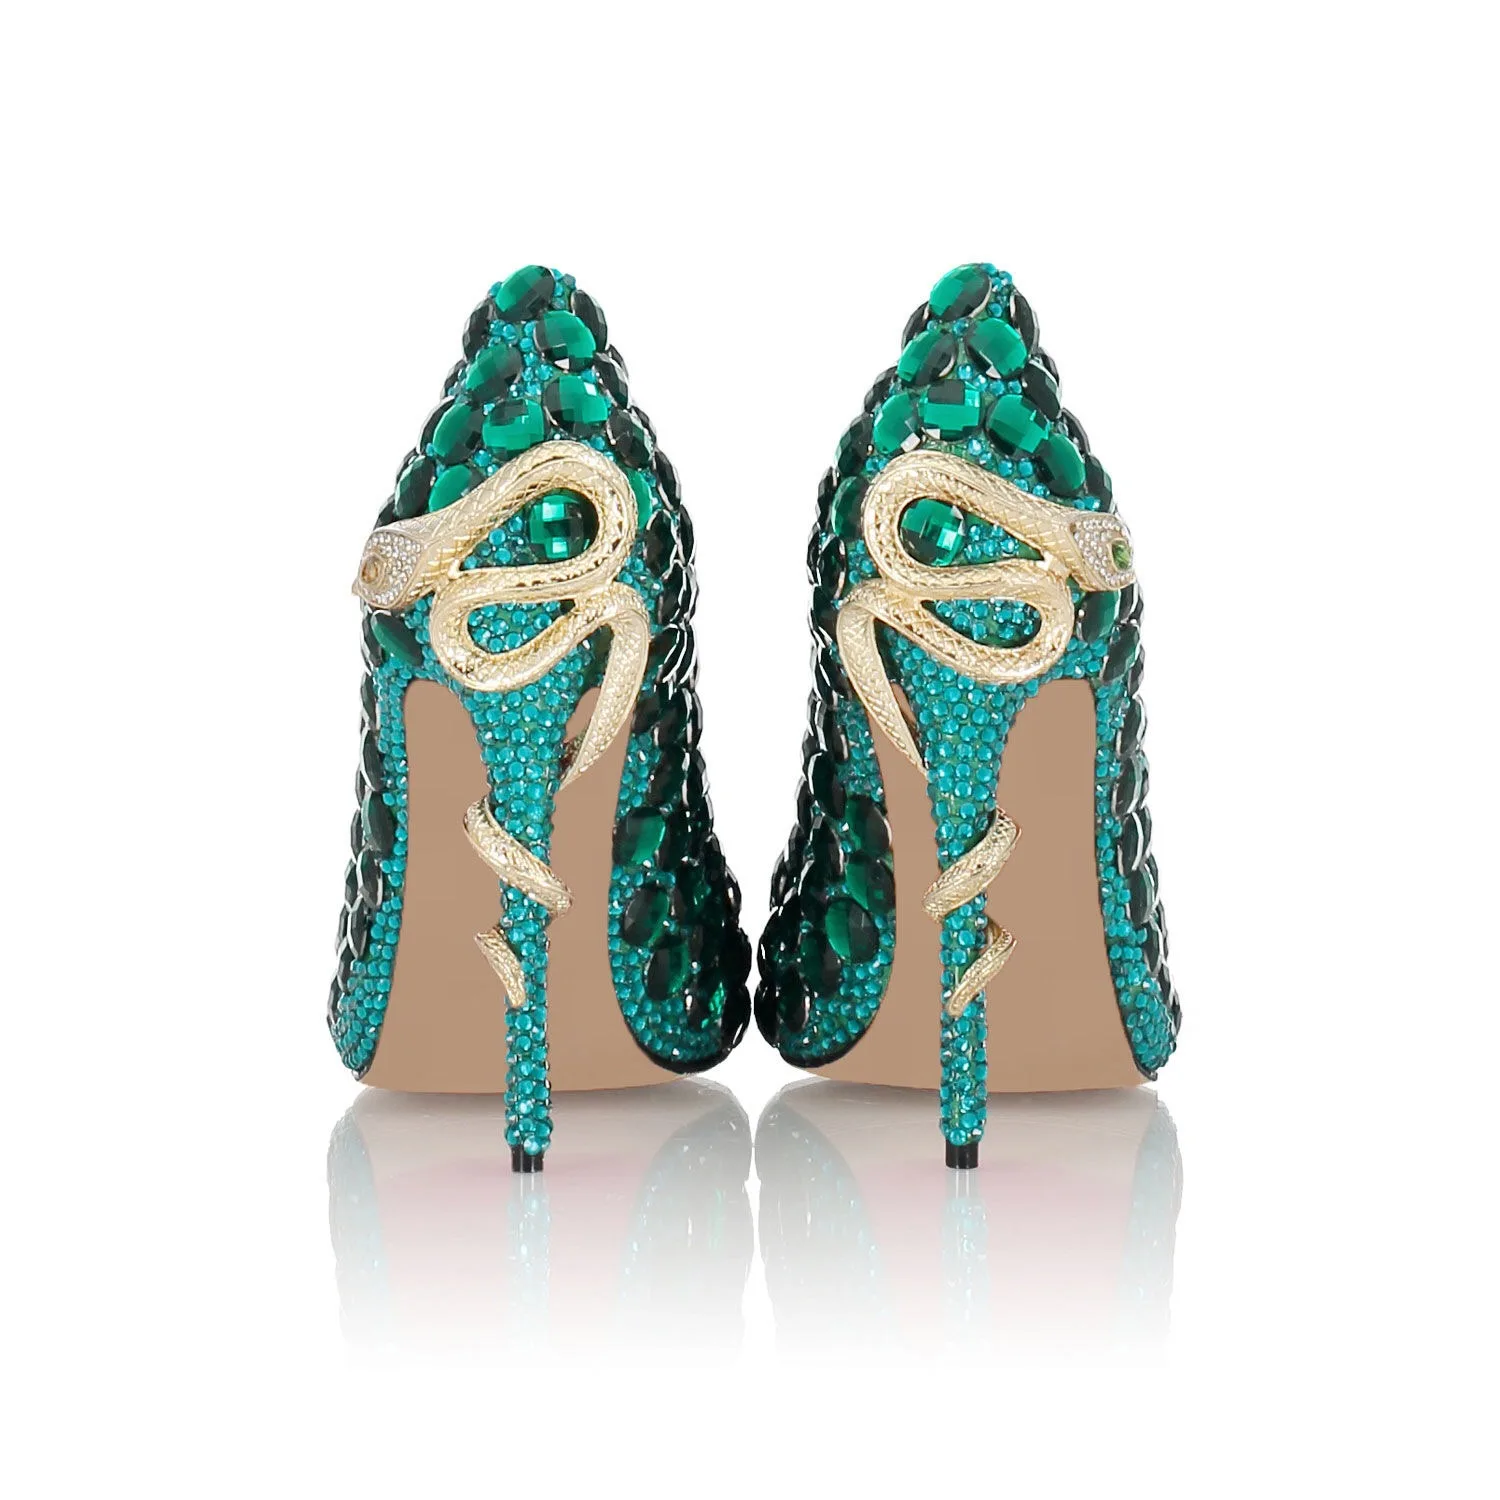 Роскошные Дизайнерские зеленые туфли-лодочки со стразами; Брендовые женские Элегантные классические туфли-лодочки с украшением в виде кристаллов на высоком тонком каблуке